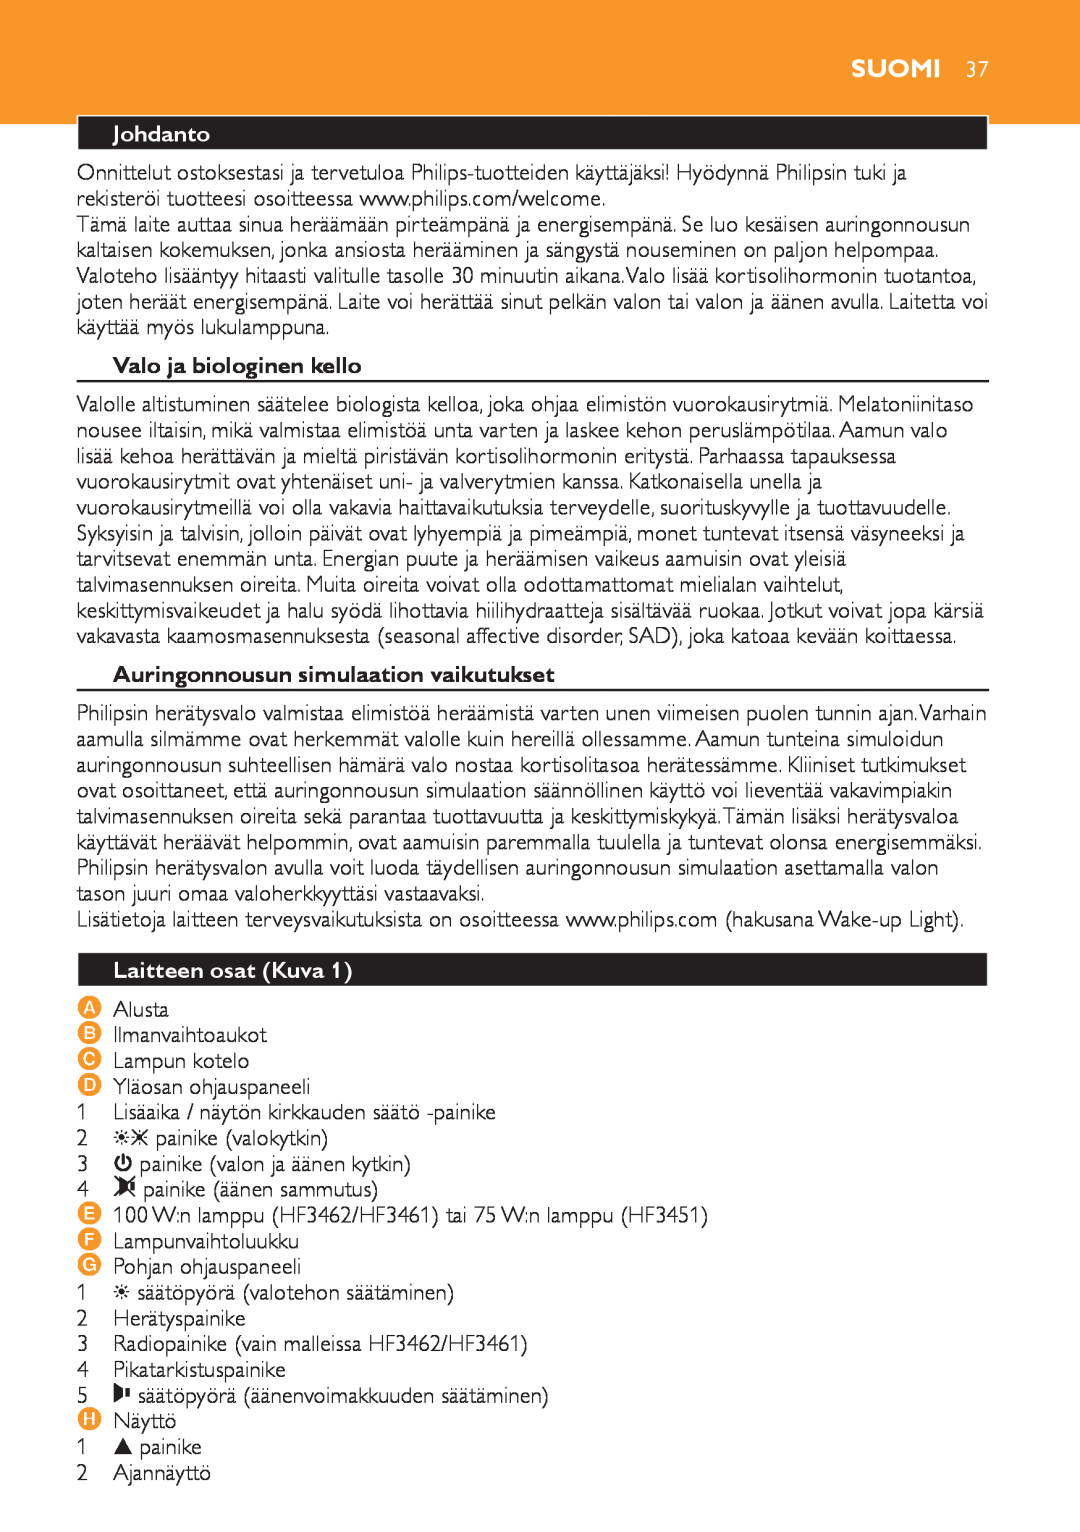 Philips HF3451 manual Suomi, Johdanto, Valo ja biologinen kello, Auringonnousun simulaation vaikutukset, Laitteen osat Kuva 